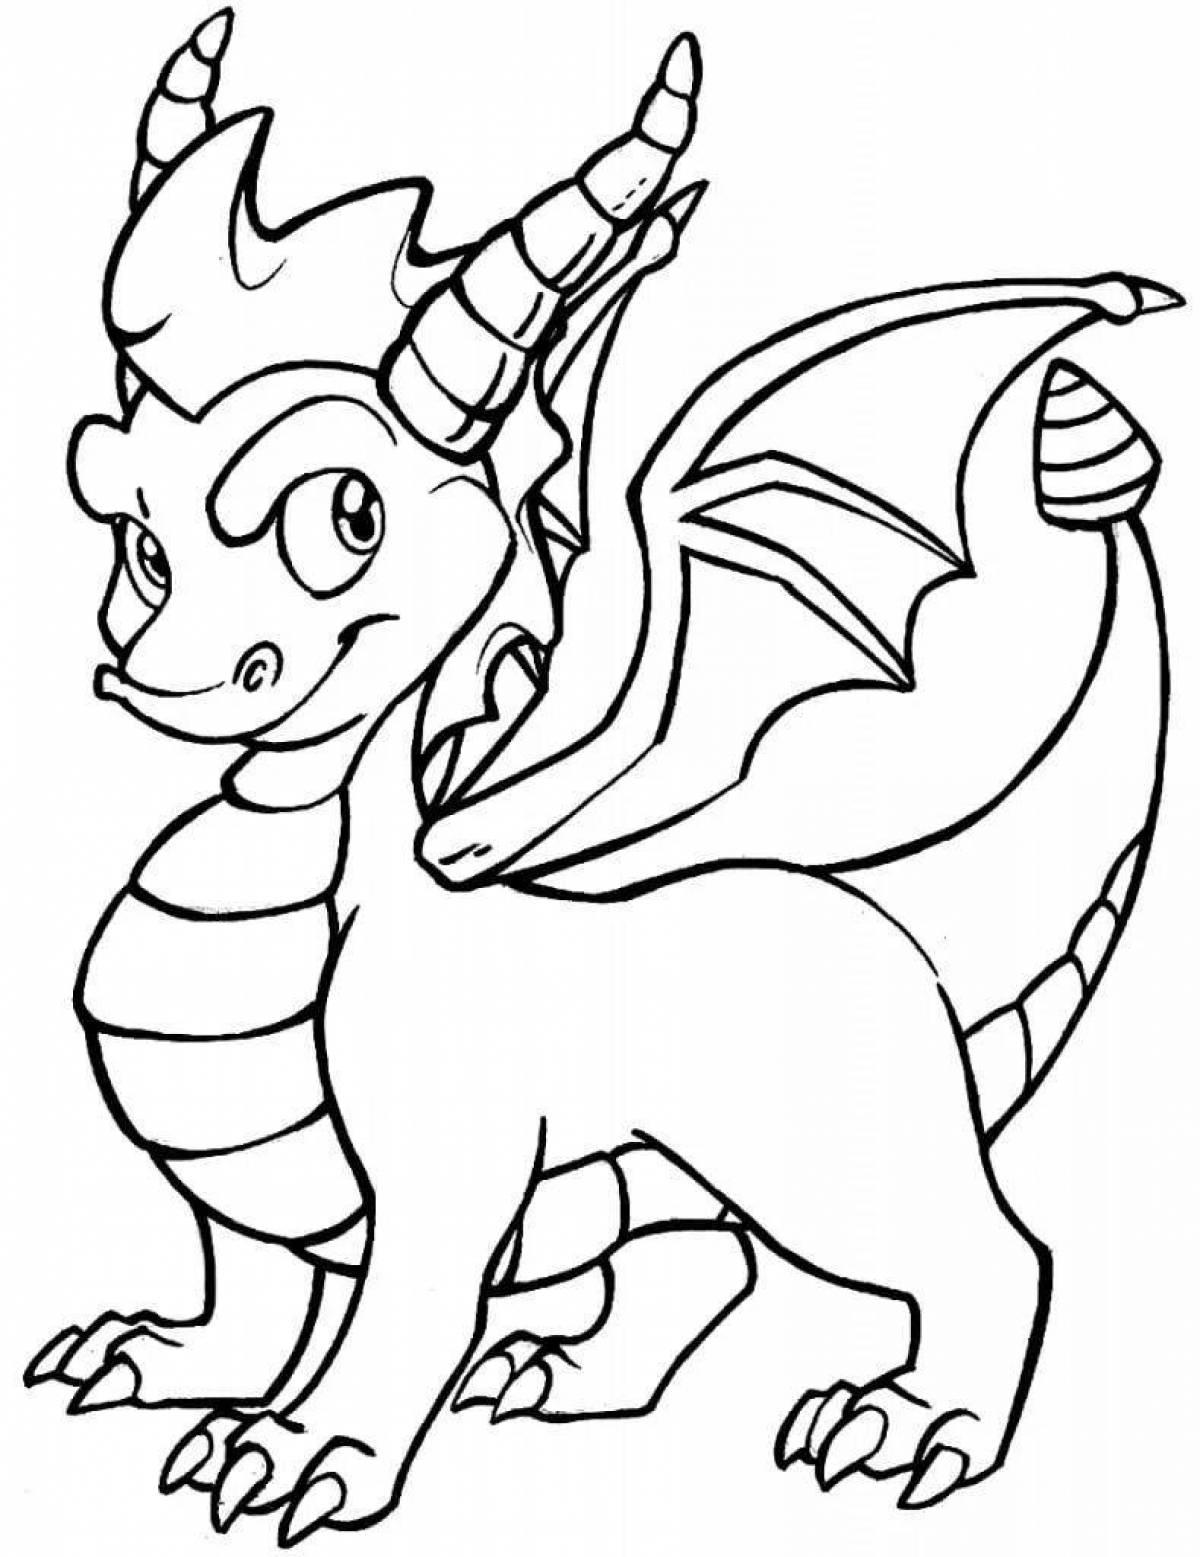 Подробная раскраска драконы для детей